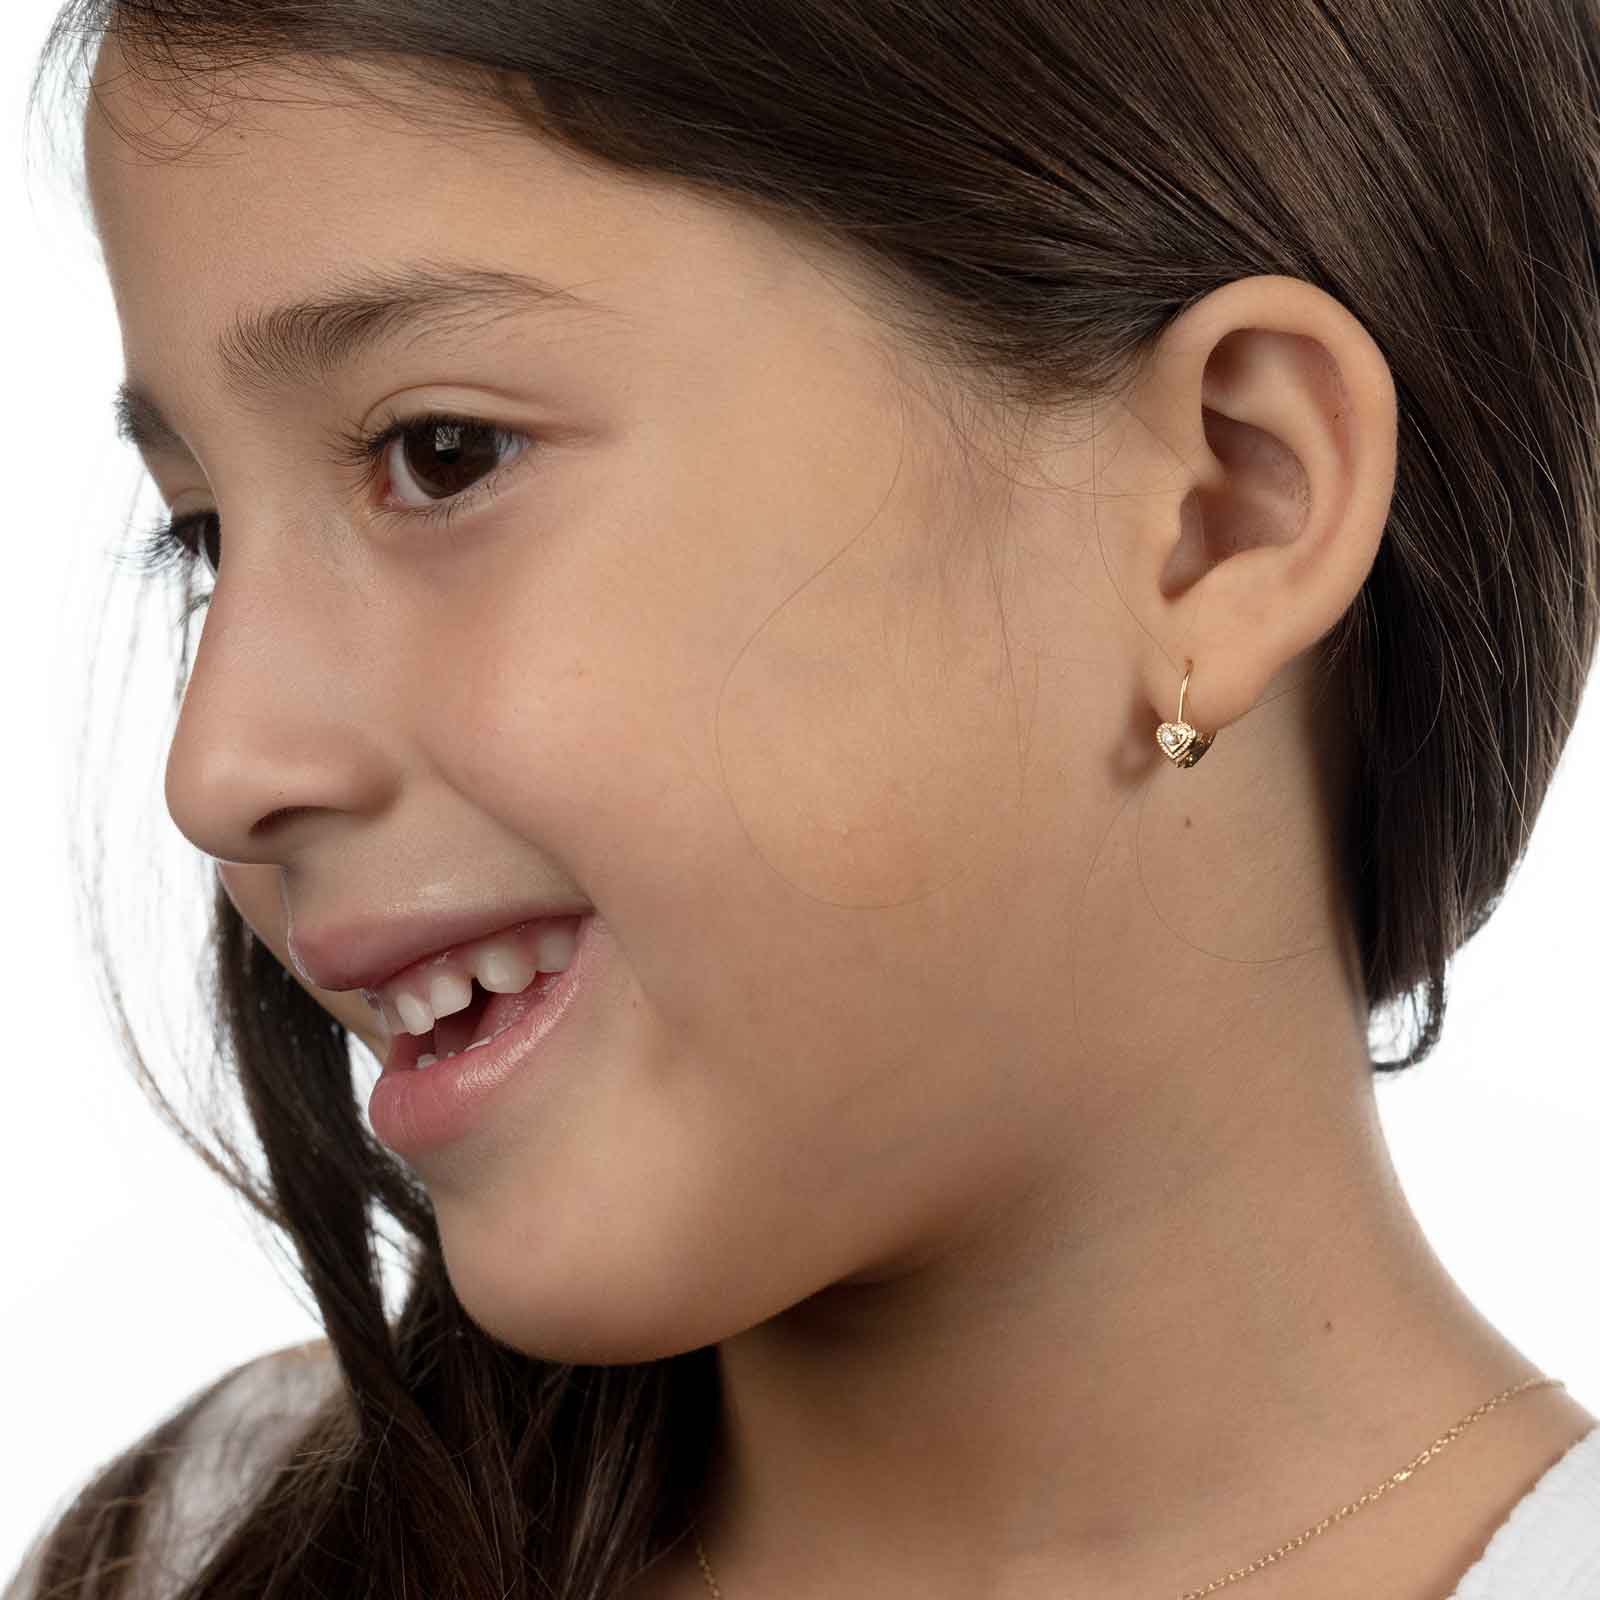 14 K Solid Gold GF Heart Drop Earrings Women/Girl,Love Trendy Fine Fashion  Jewelry For Europe Eastern Kids Children Best Gift From 1,45 € | DHgate